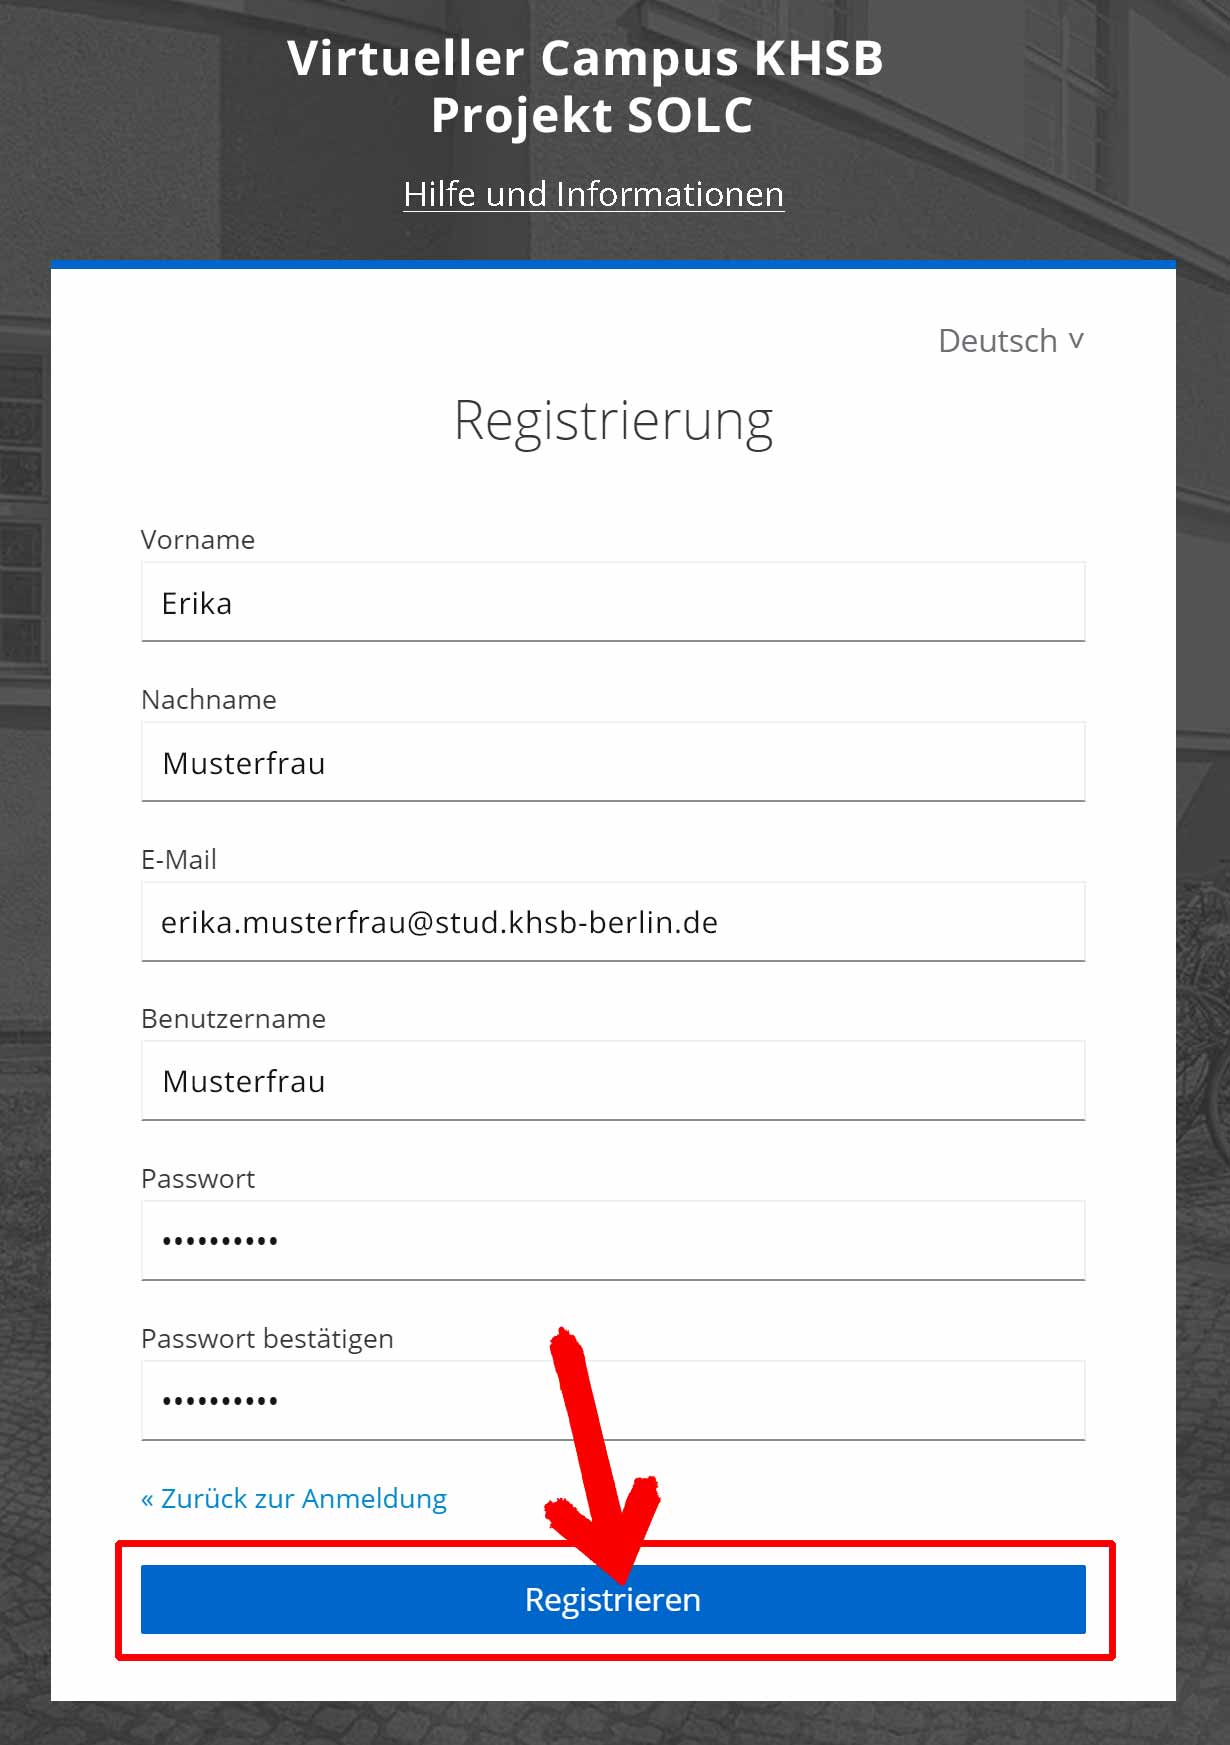 Registrierungsseite mit Beispieldaten des VC auf visit.solc-khsb.de